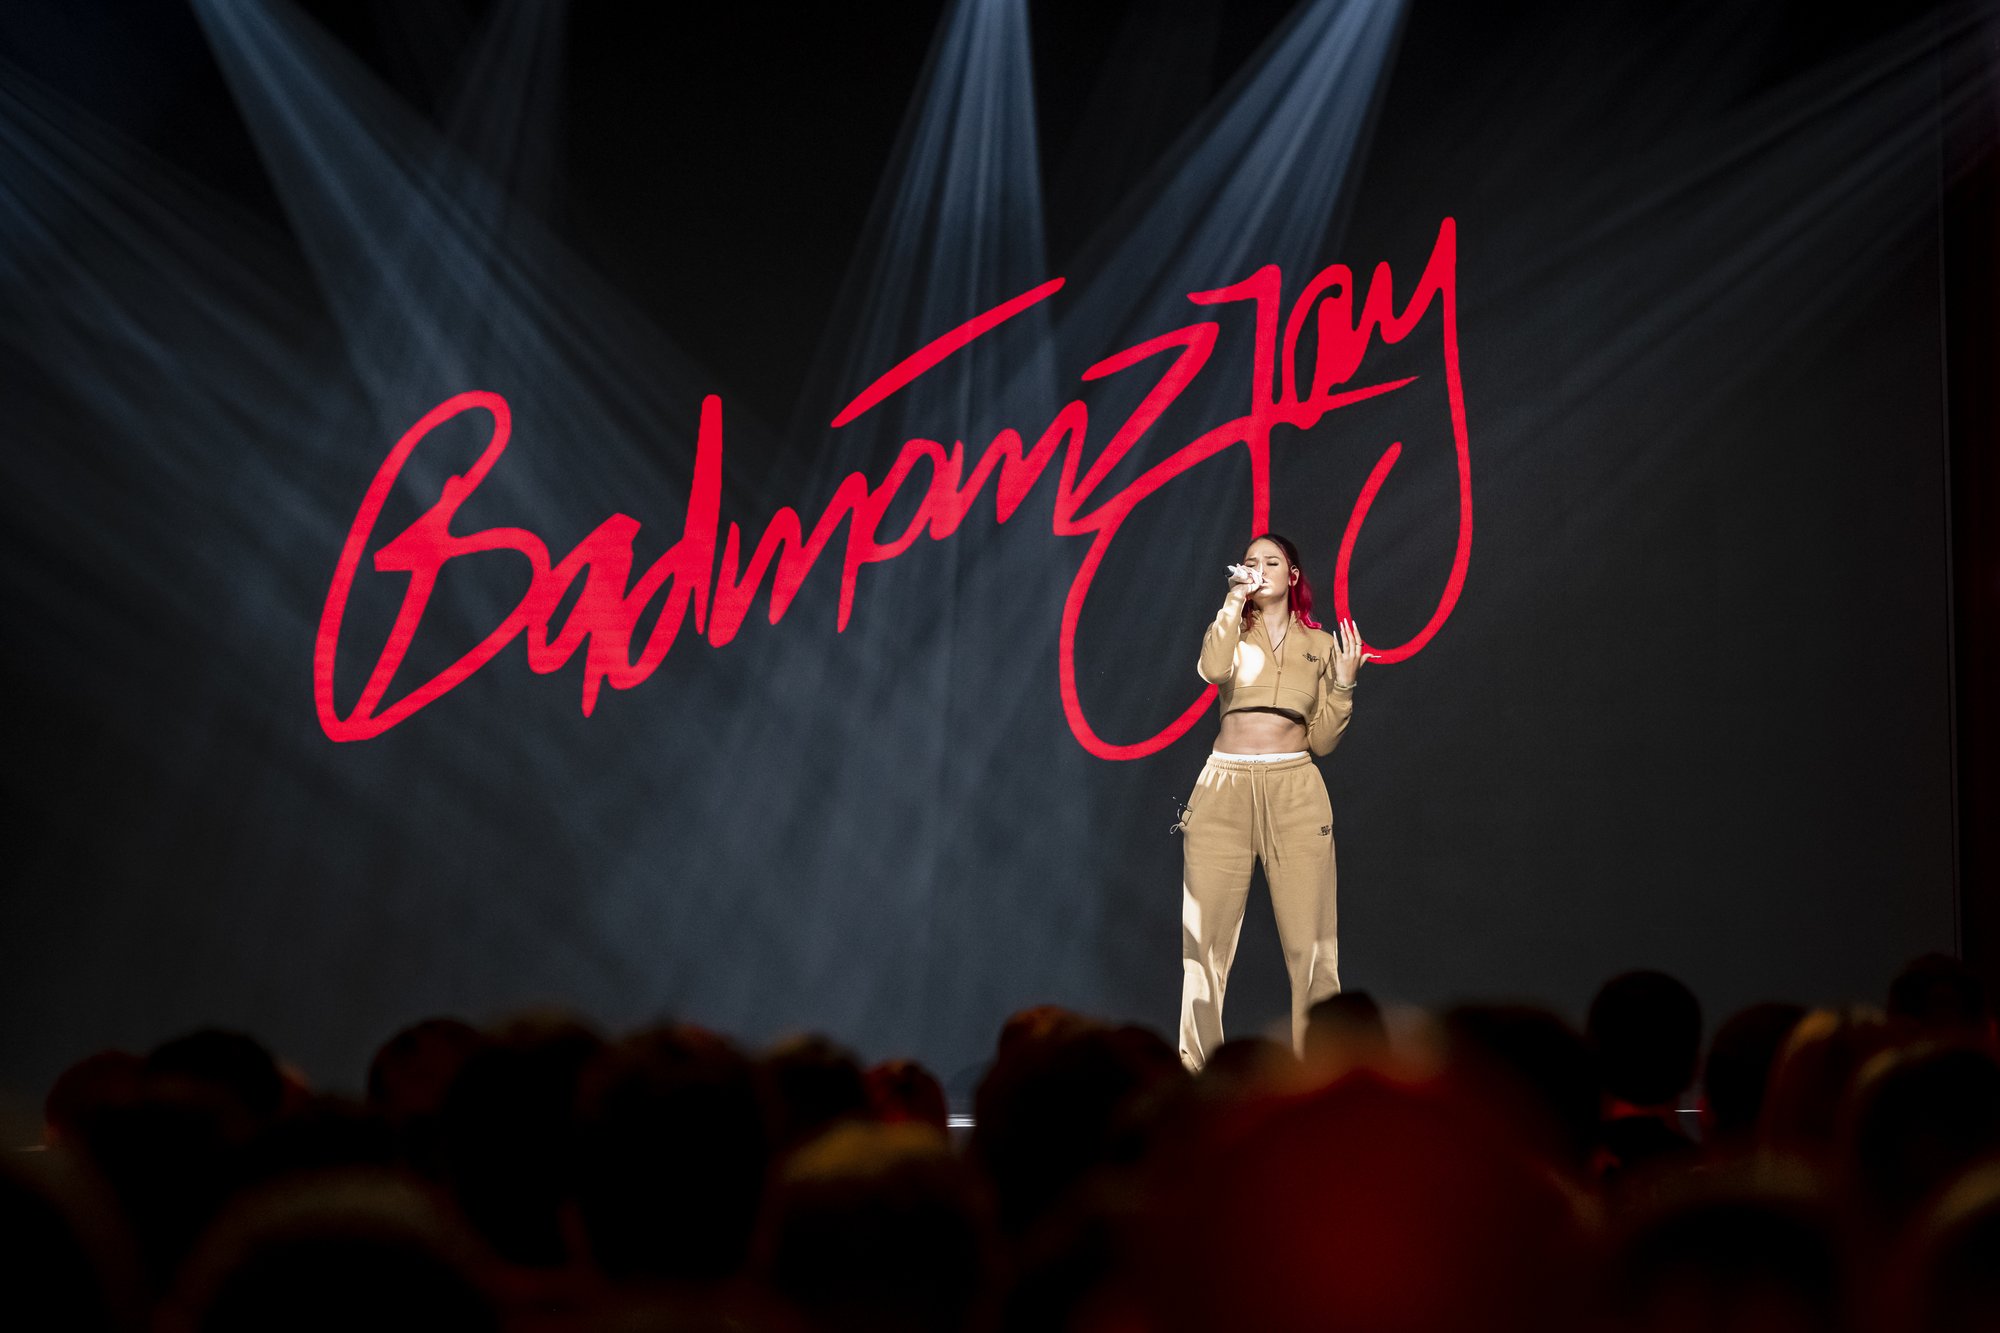 Eine Person steht auf der Bühne und hält ein Mikrofon in der Hand. Im Hintergrund steht der Schriftzug "Badmómzjay".